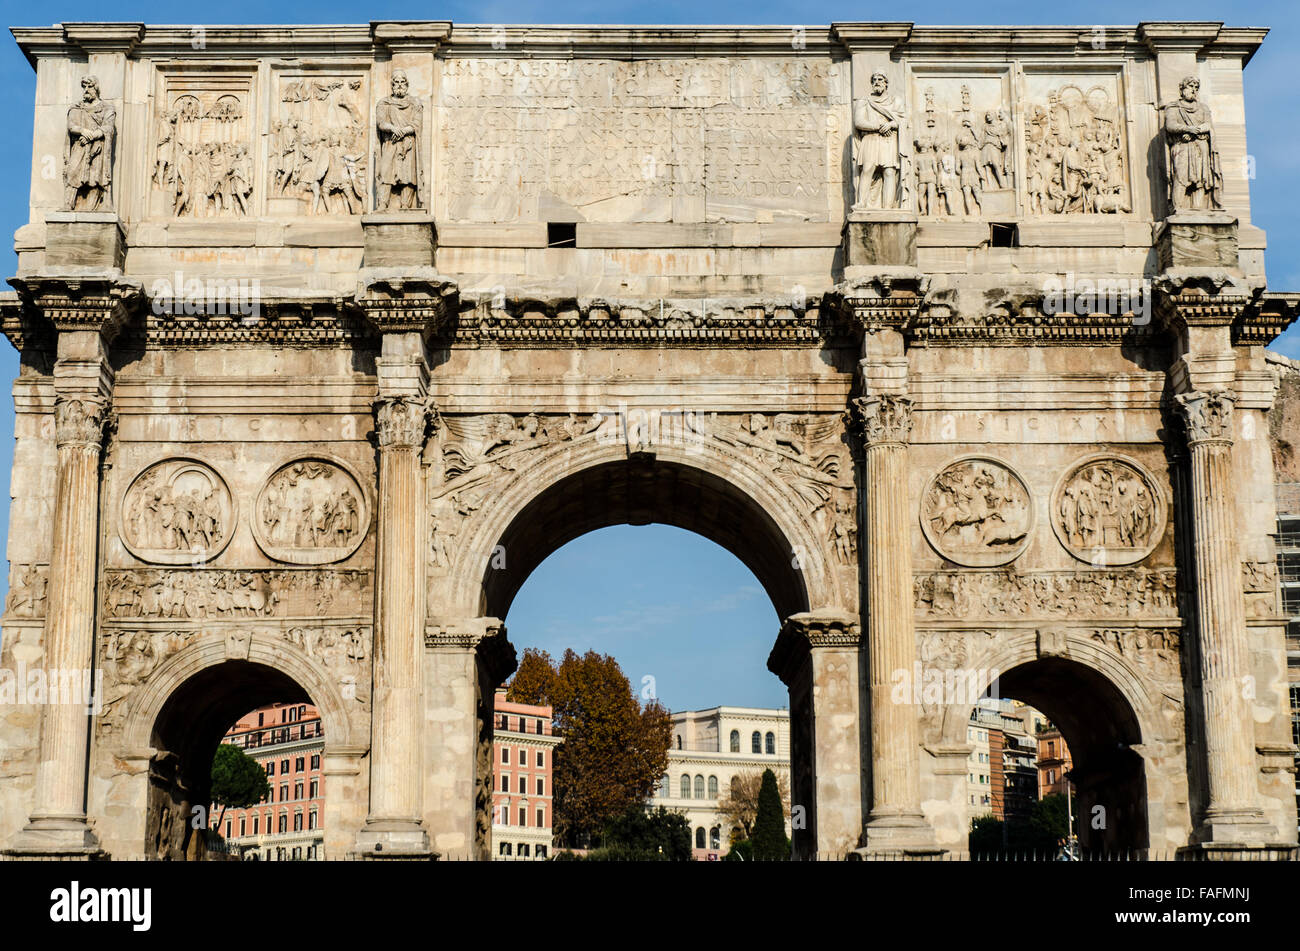 El Arco de Constantino es un arco triunfal en Roma, situado entre el Coliseo y la Colina Palatina. Foto de stock